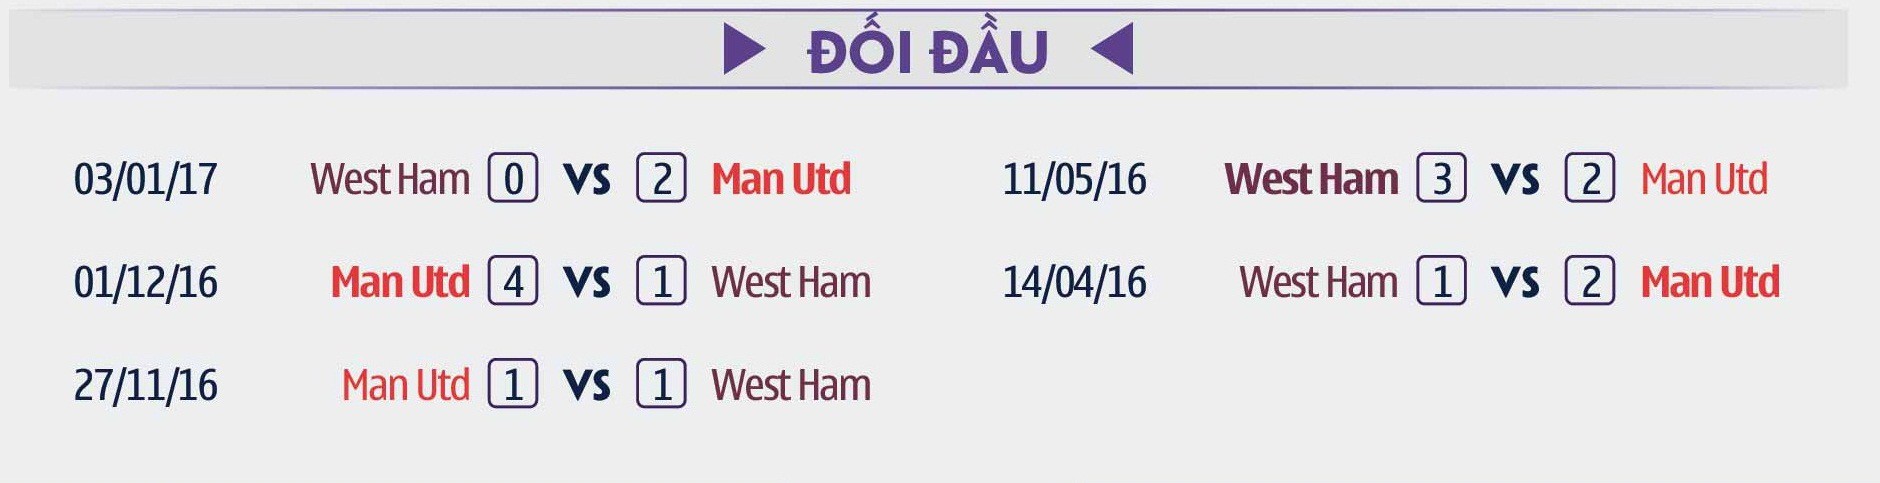 Thành tích đối đầu giữa Man Utd và West Ham